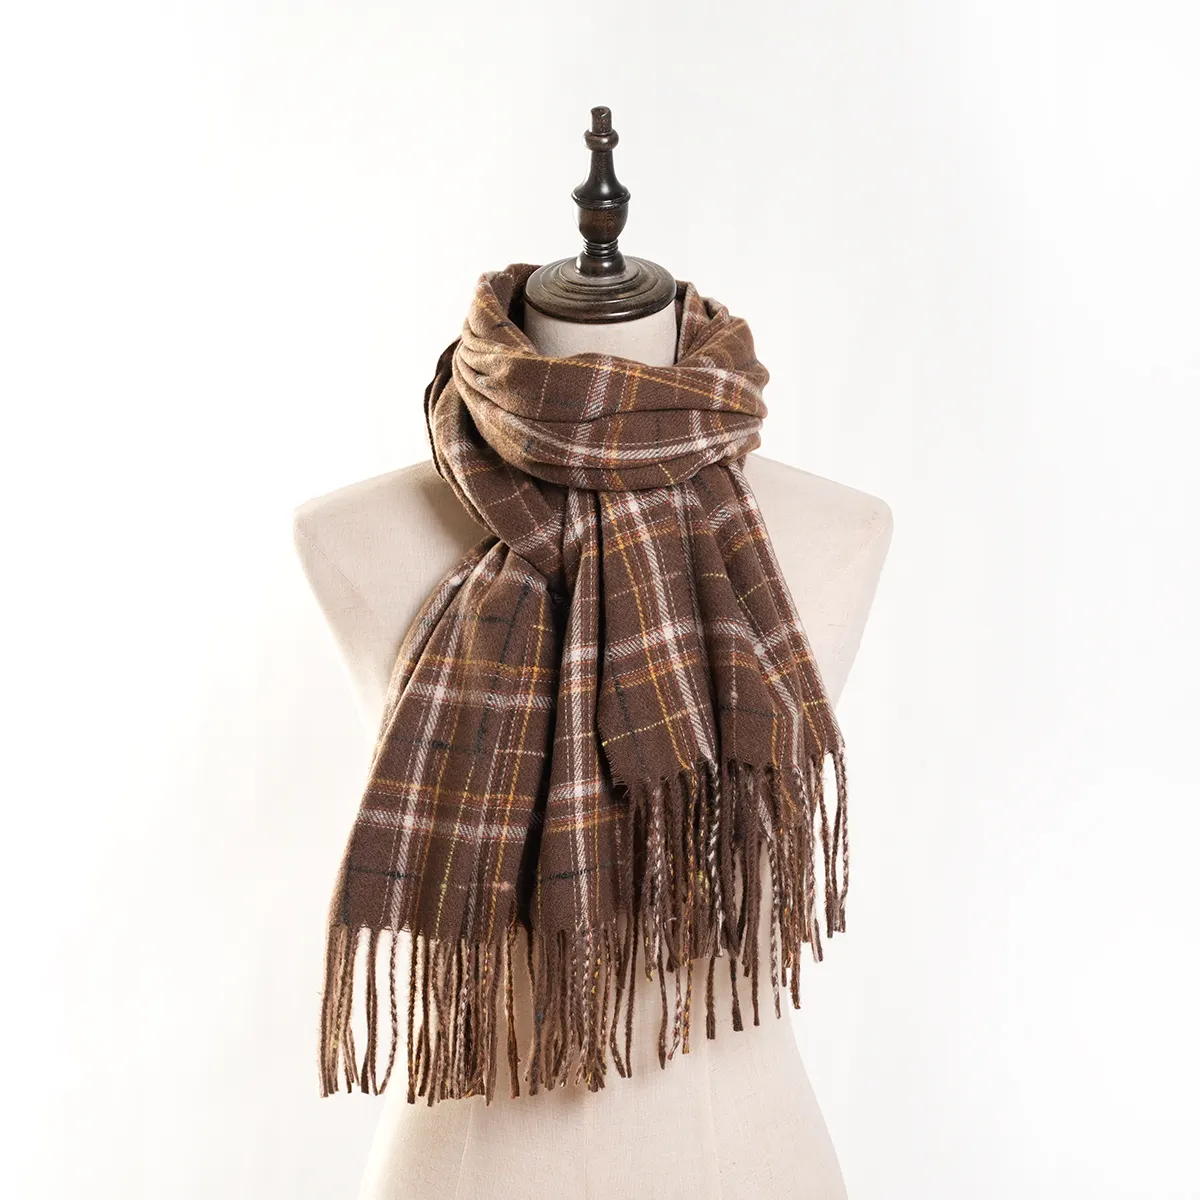 Vendita calda nuova scialle da donna in cashmere invernale all-match sciarpa scozzese a righe con nappa calda da donna scialle